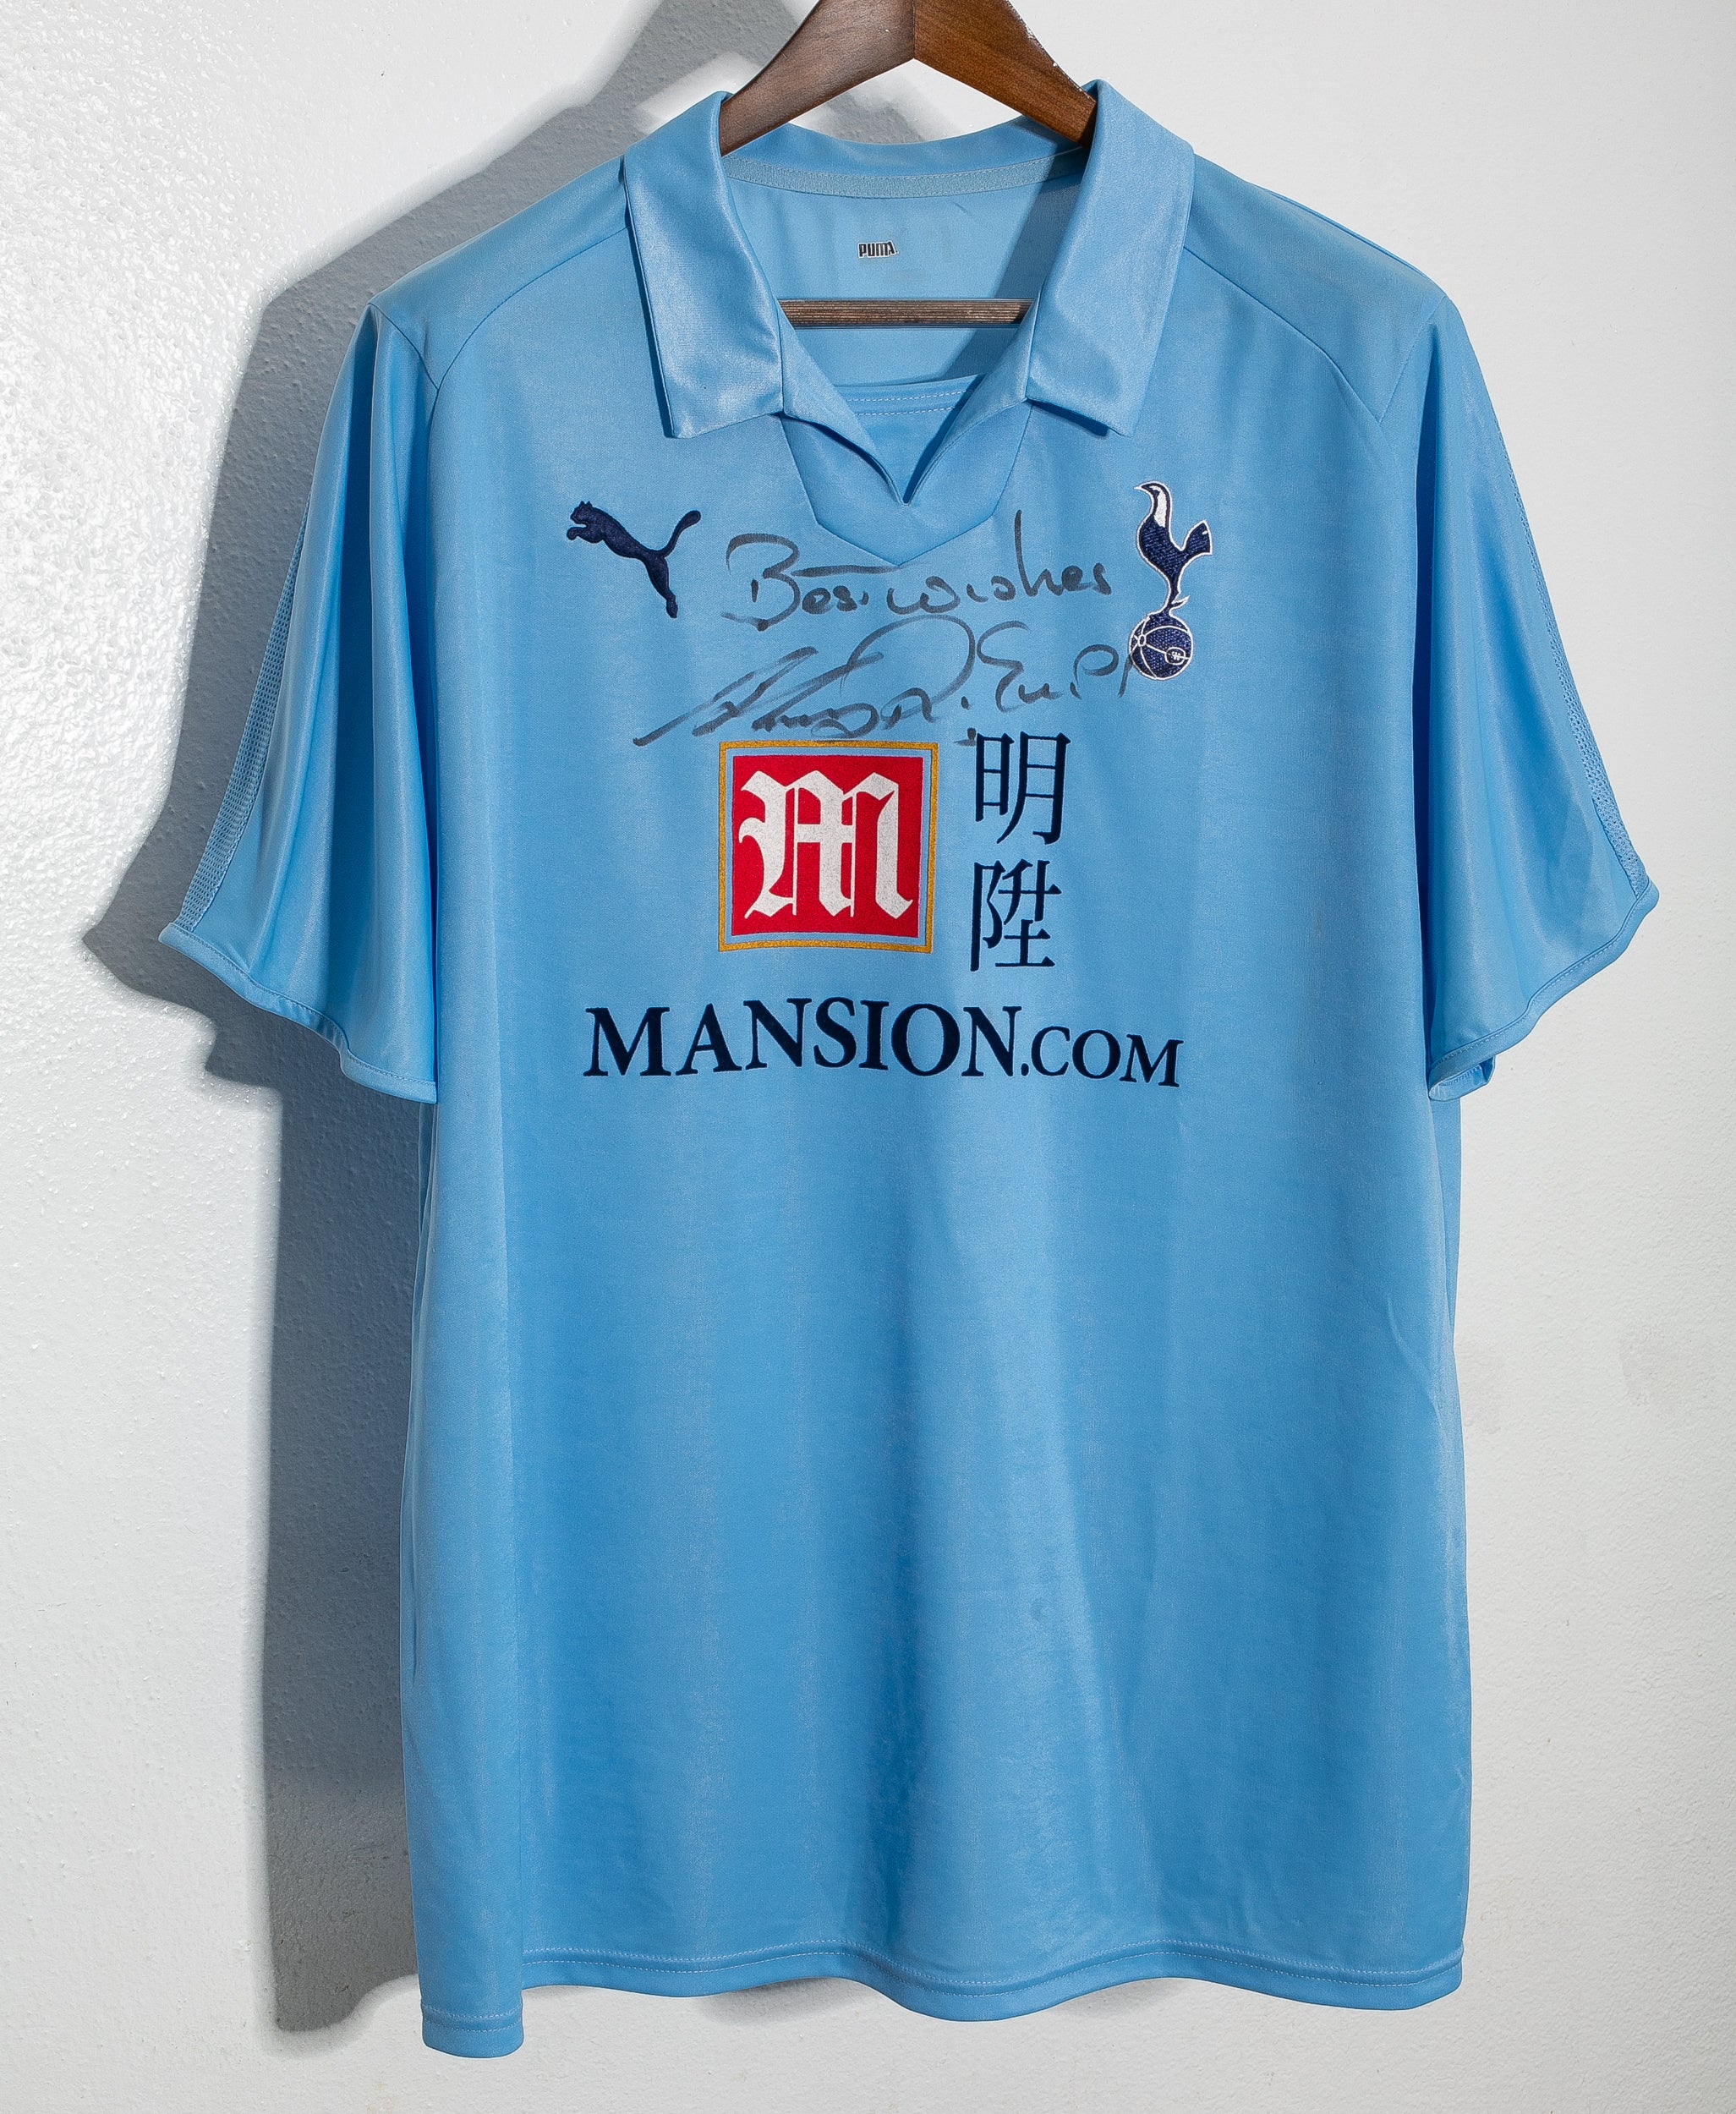 Tottenham Hotspur 2008-09 Away Kit